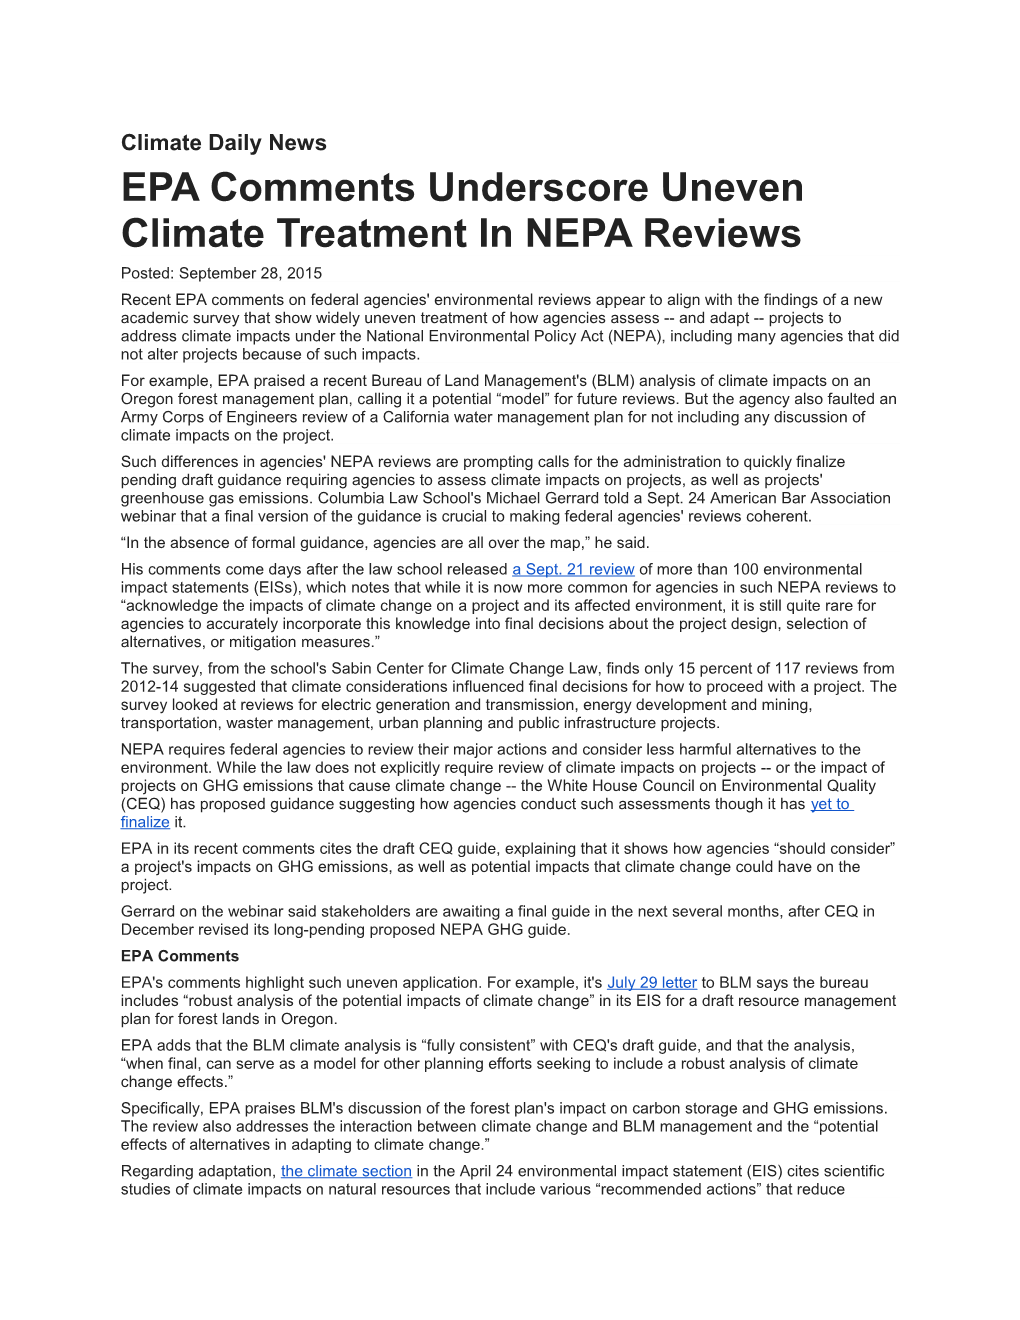 EPA Comments Underscore Uneven Climate Treatment in NEPA Reviews